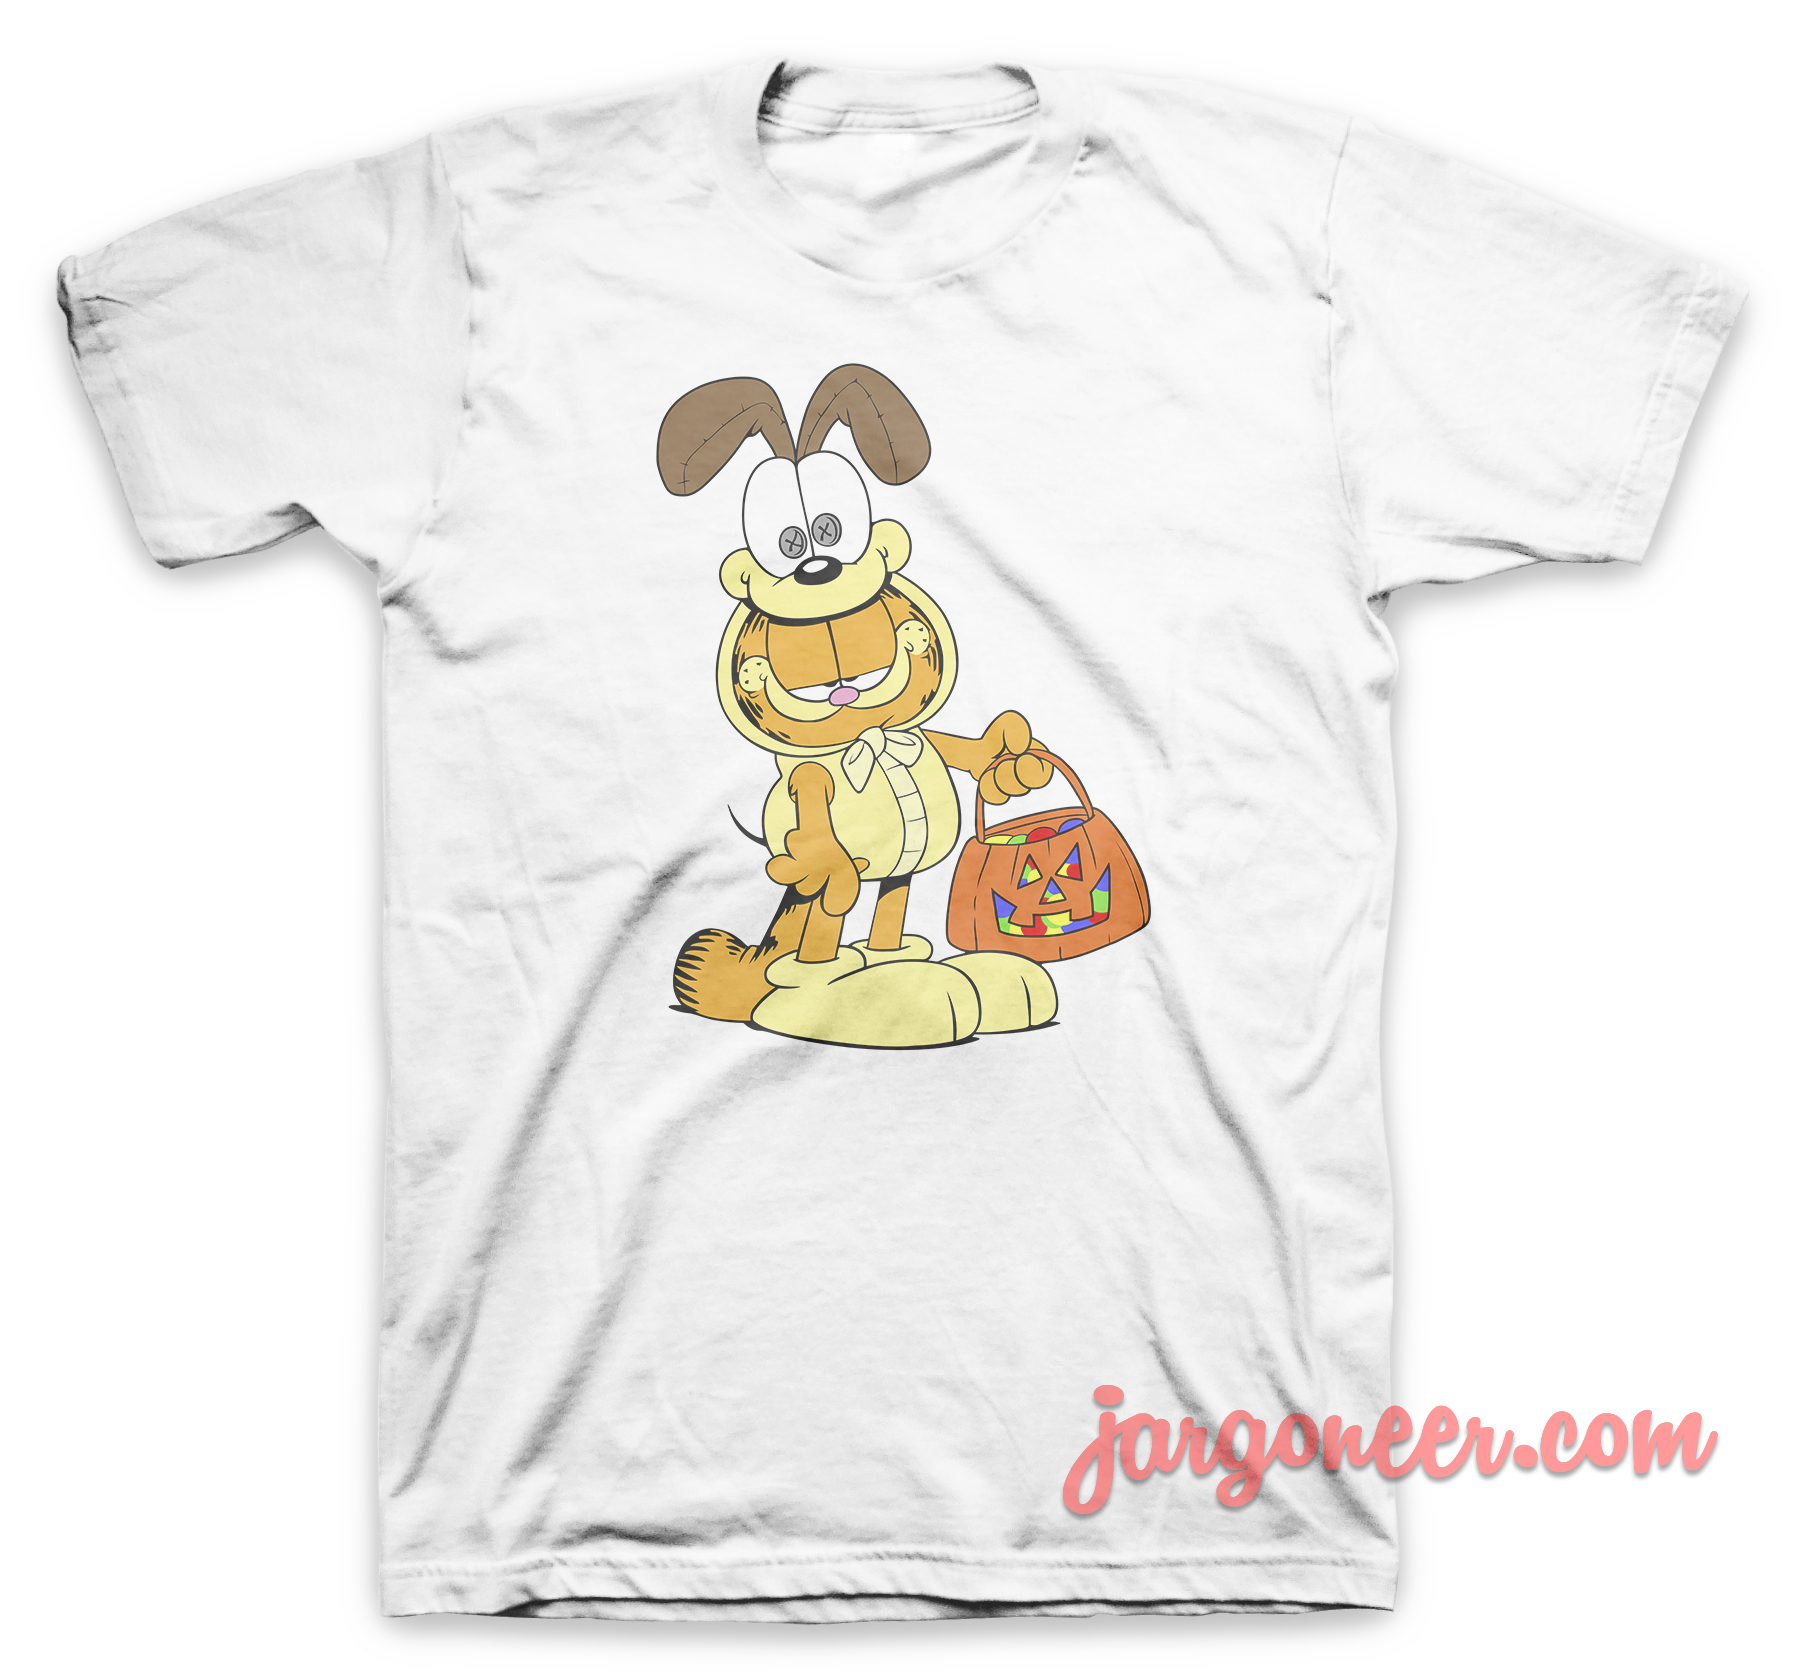 A Cat Inside The Dog White T Shirt - Shop Unique Graphic Cool Shirt Designs